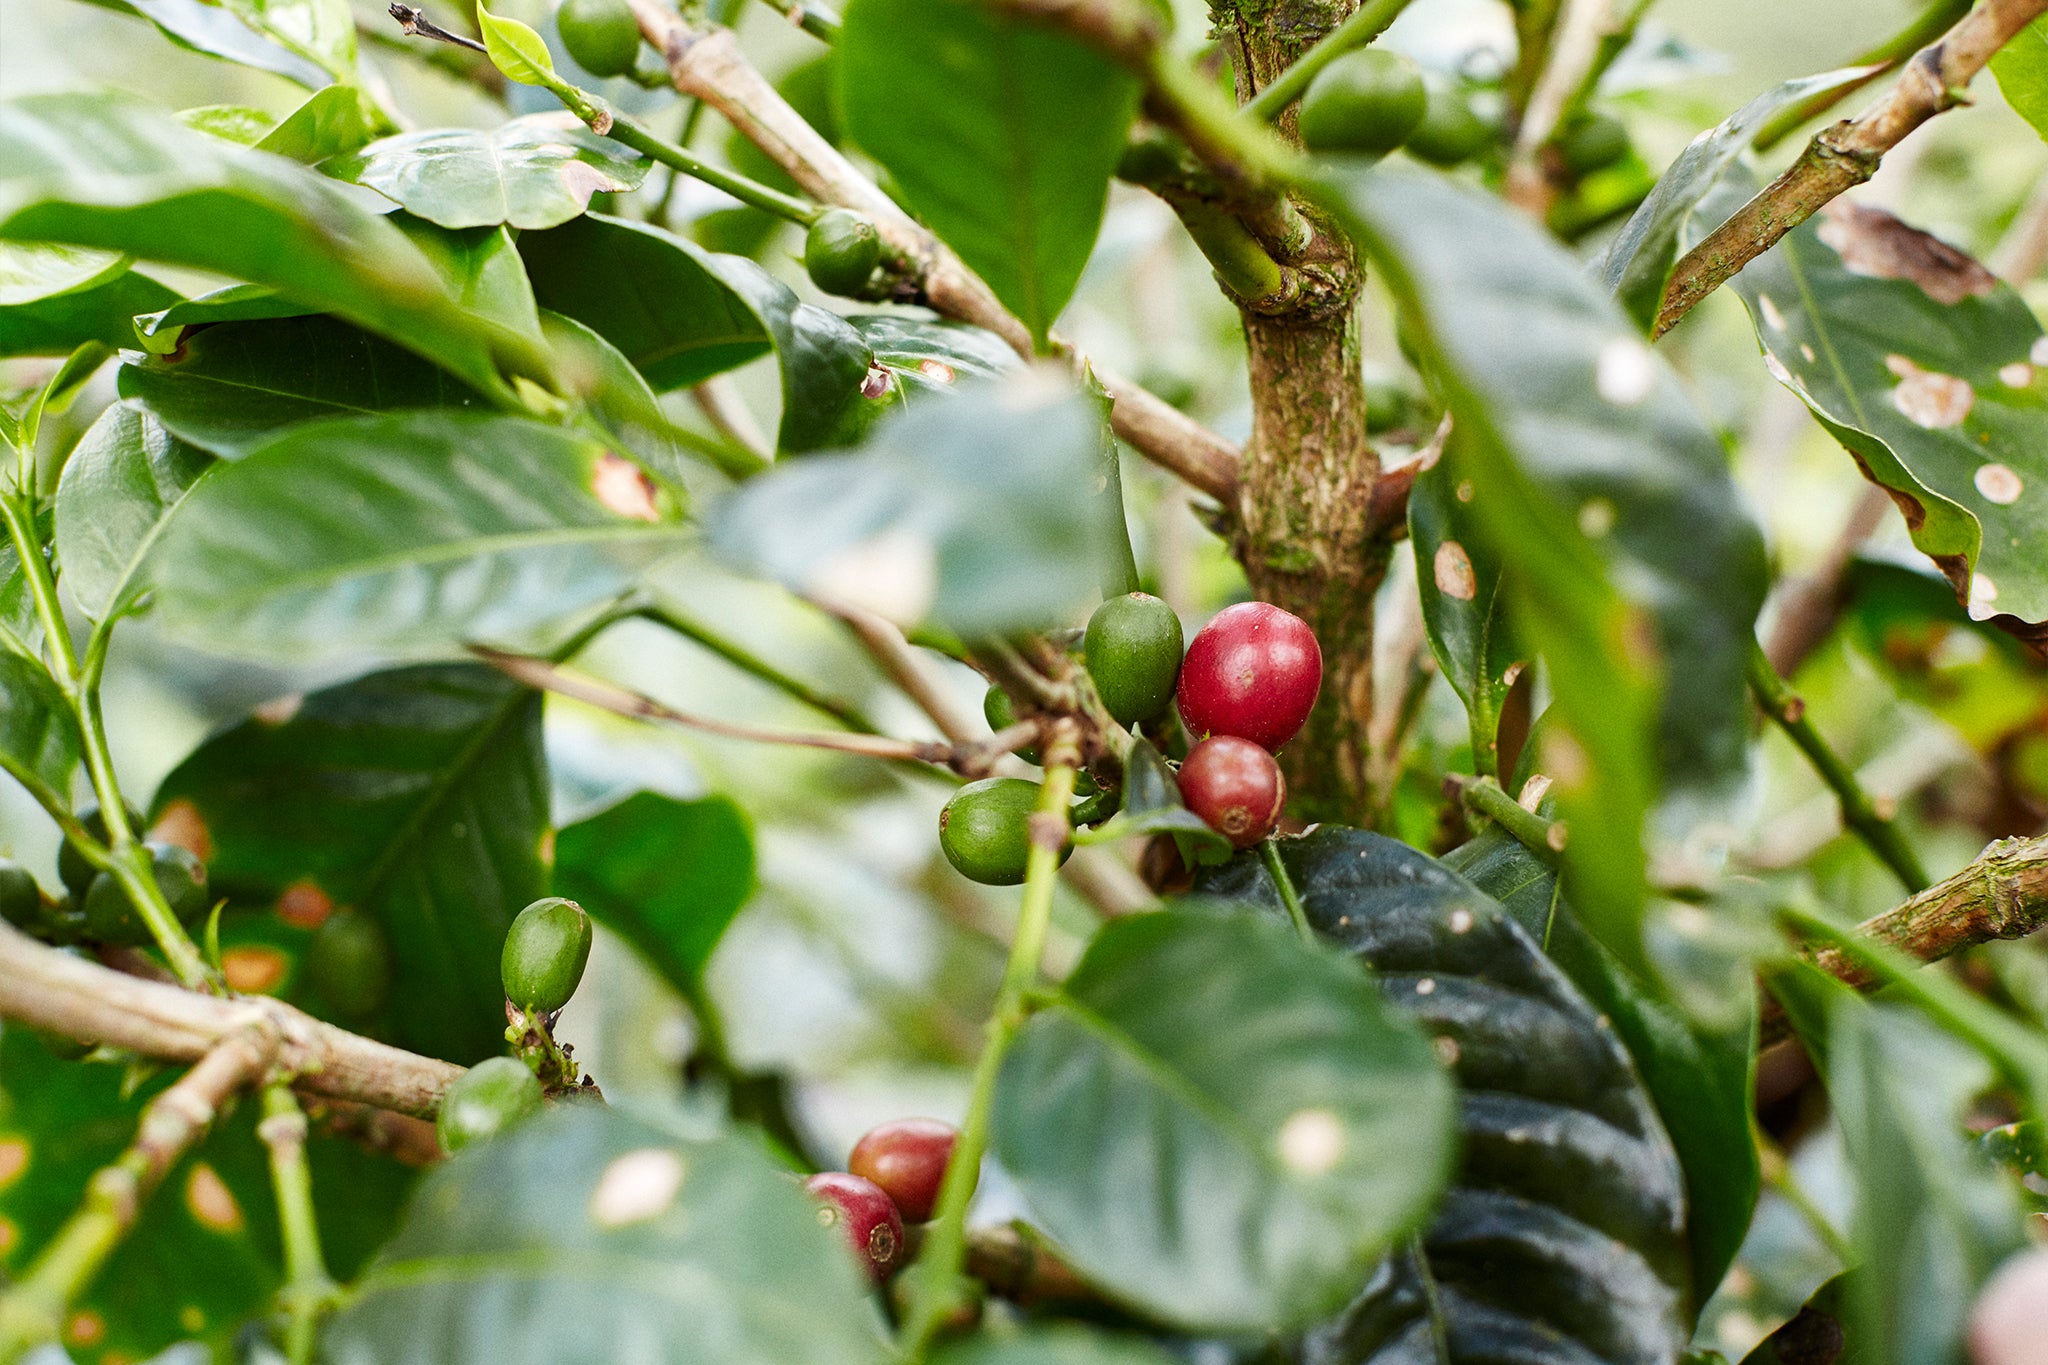 Coffee cherries on treee